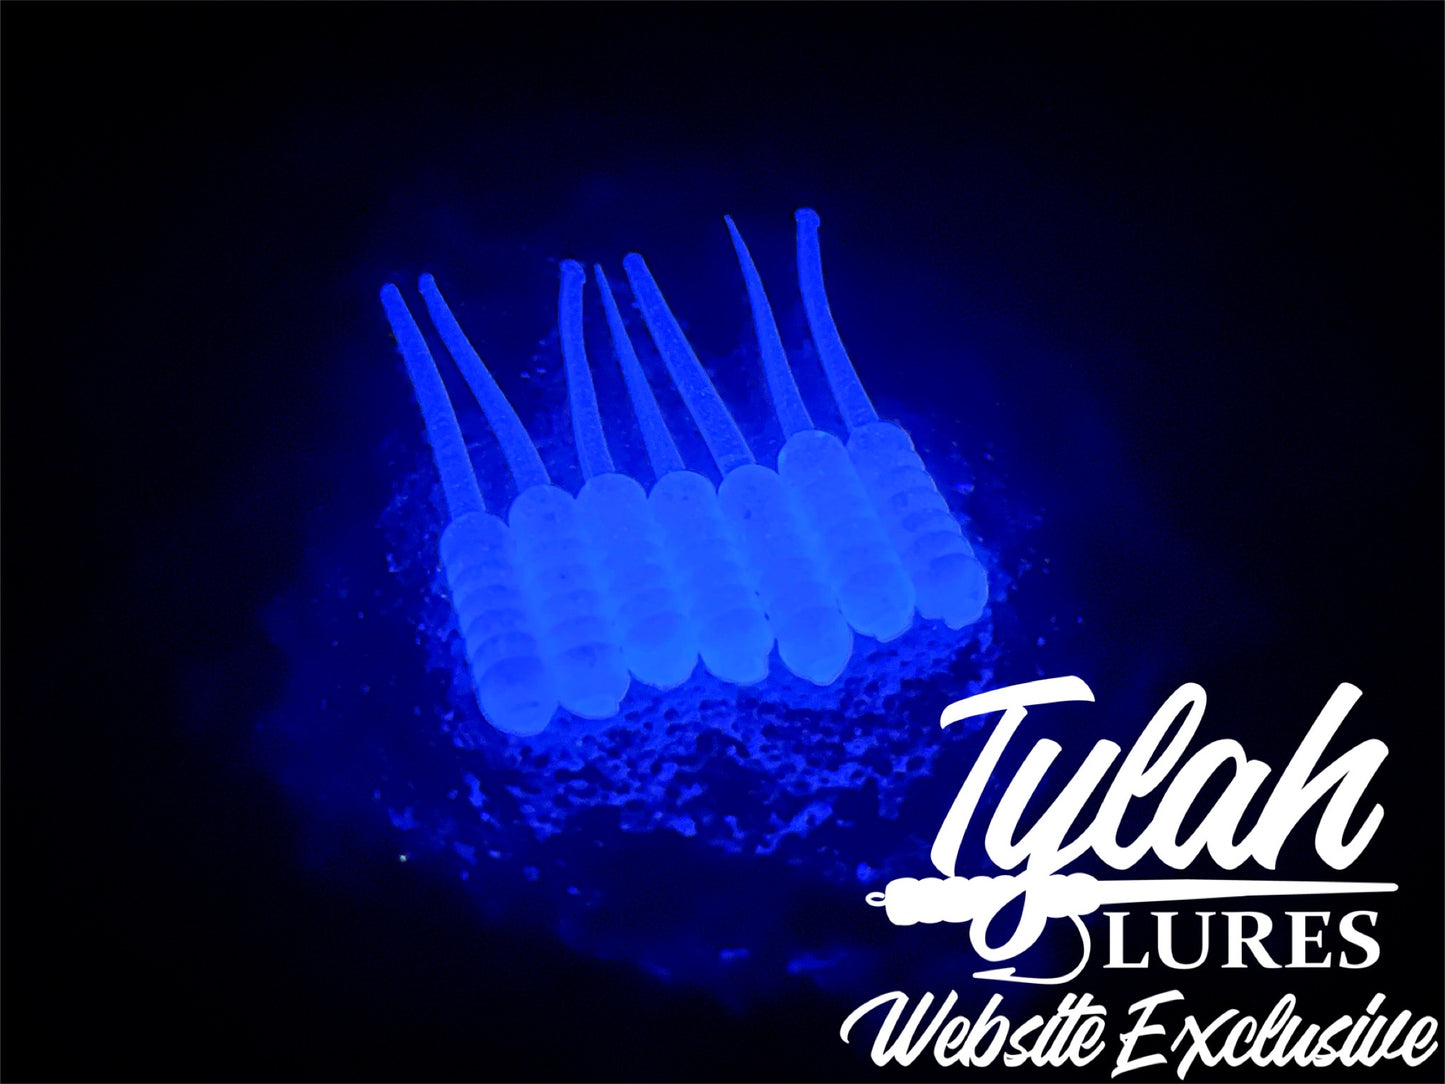 TylahLures Website Exclusive UV Purple Glow 1.5in.